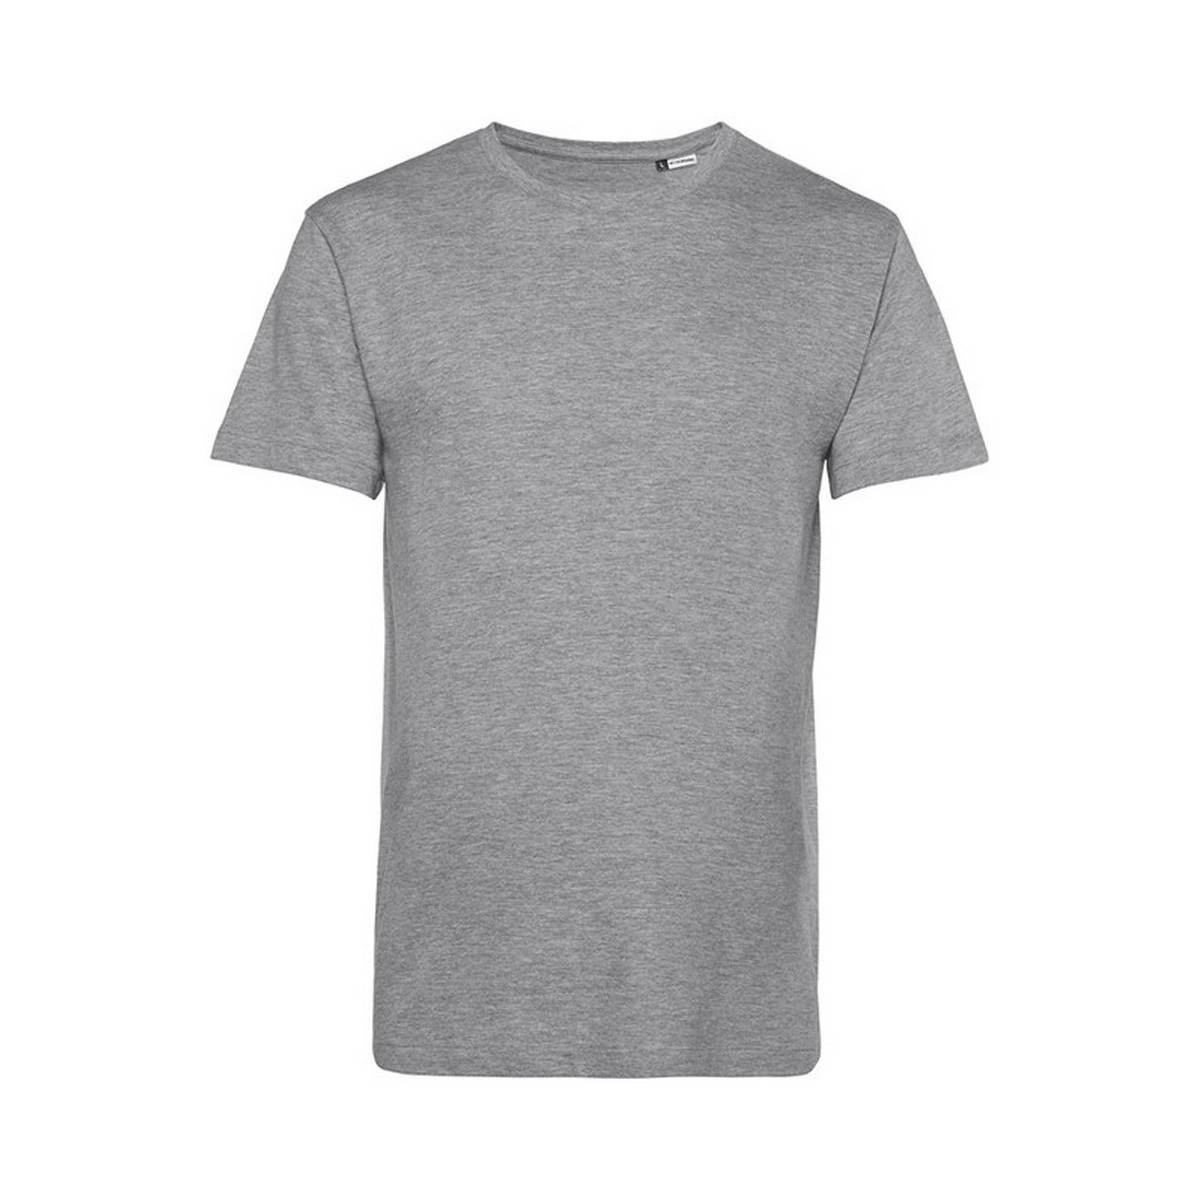 Vêtements Homme T-shirts manches longues B&c E150 Gris